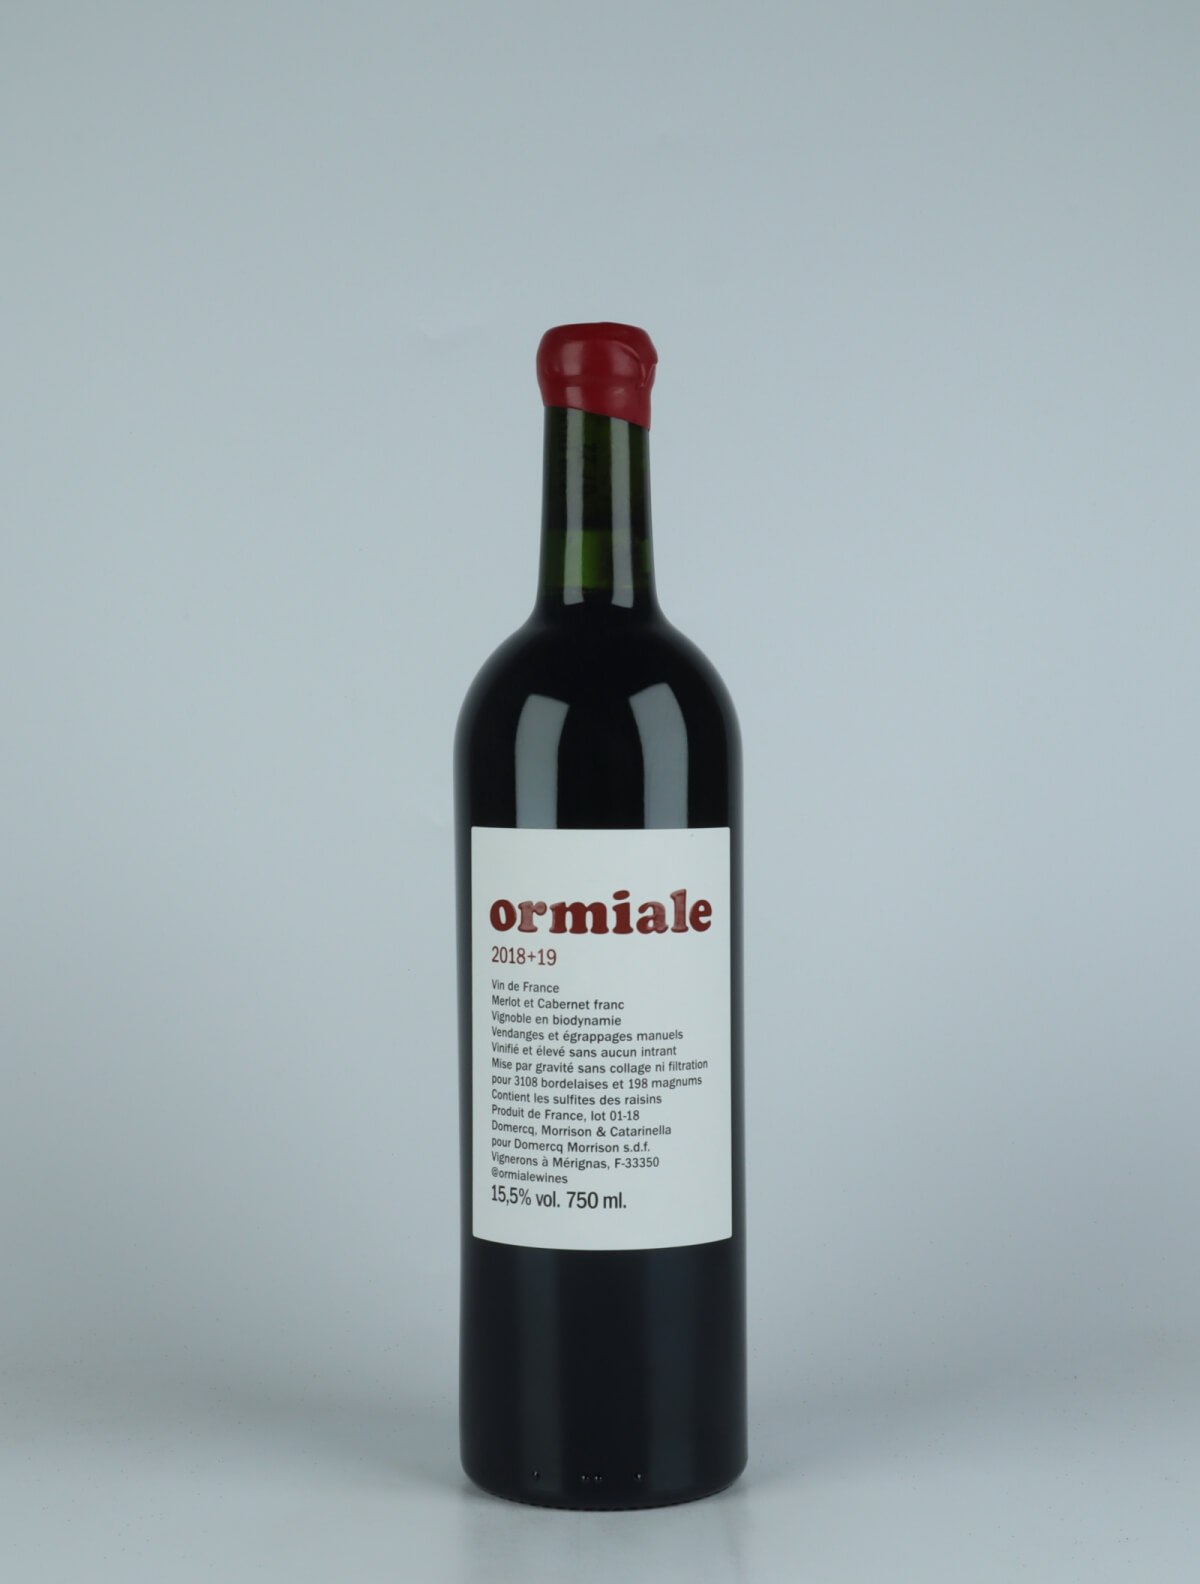 En flaske N.V. Ormiale (18+19) Rødvin fra Ormiale, Bordeaux i Frankrig